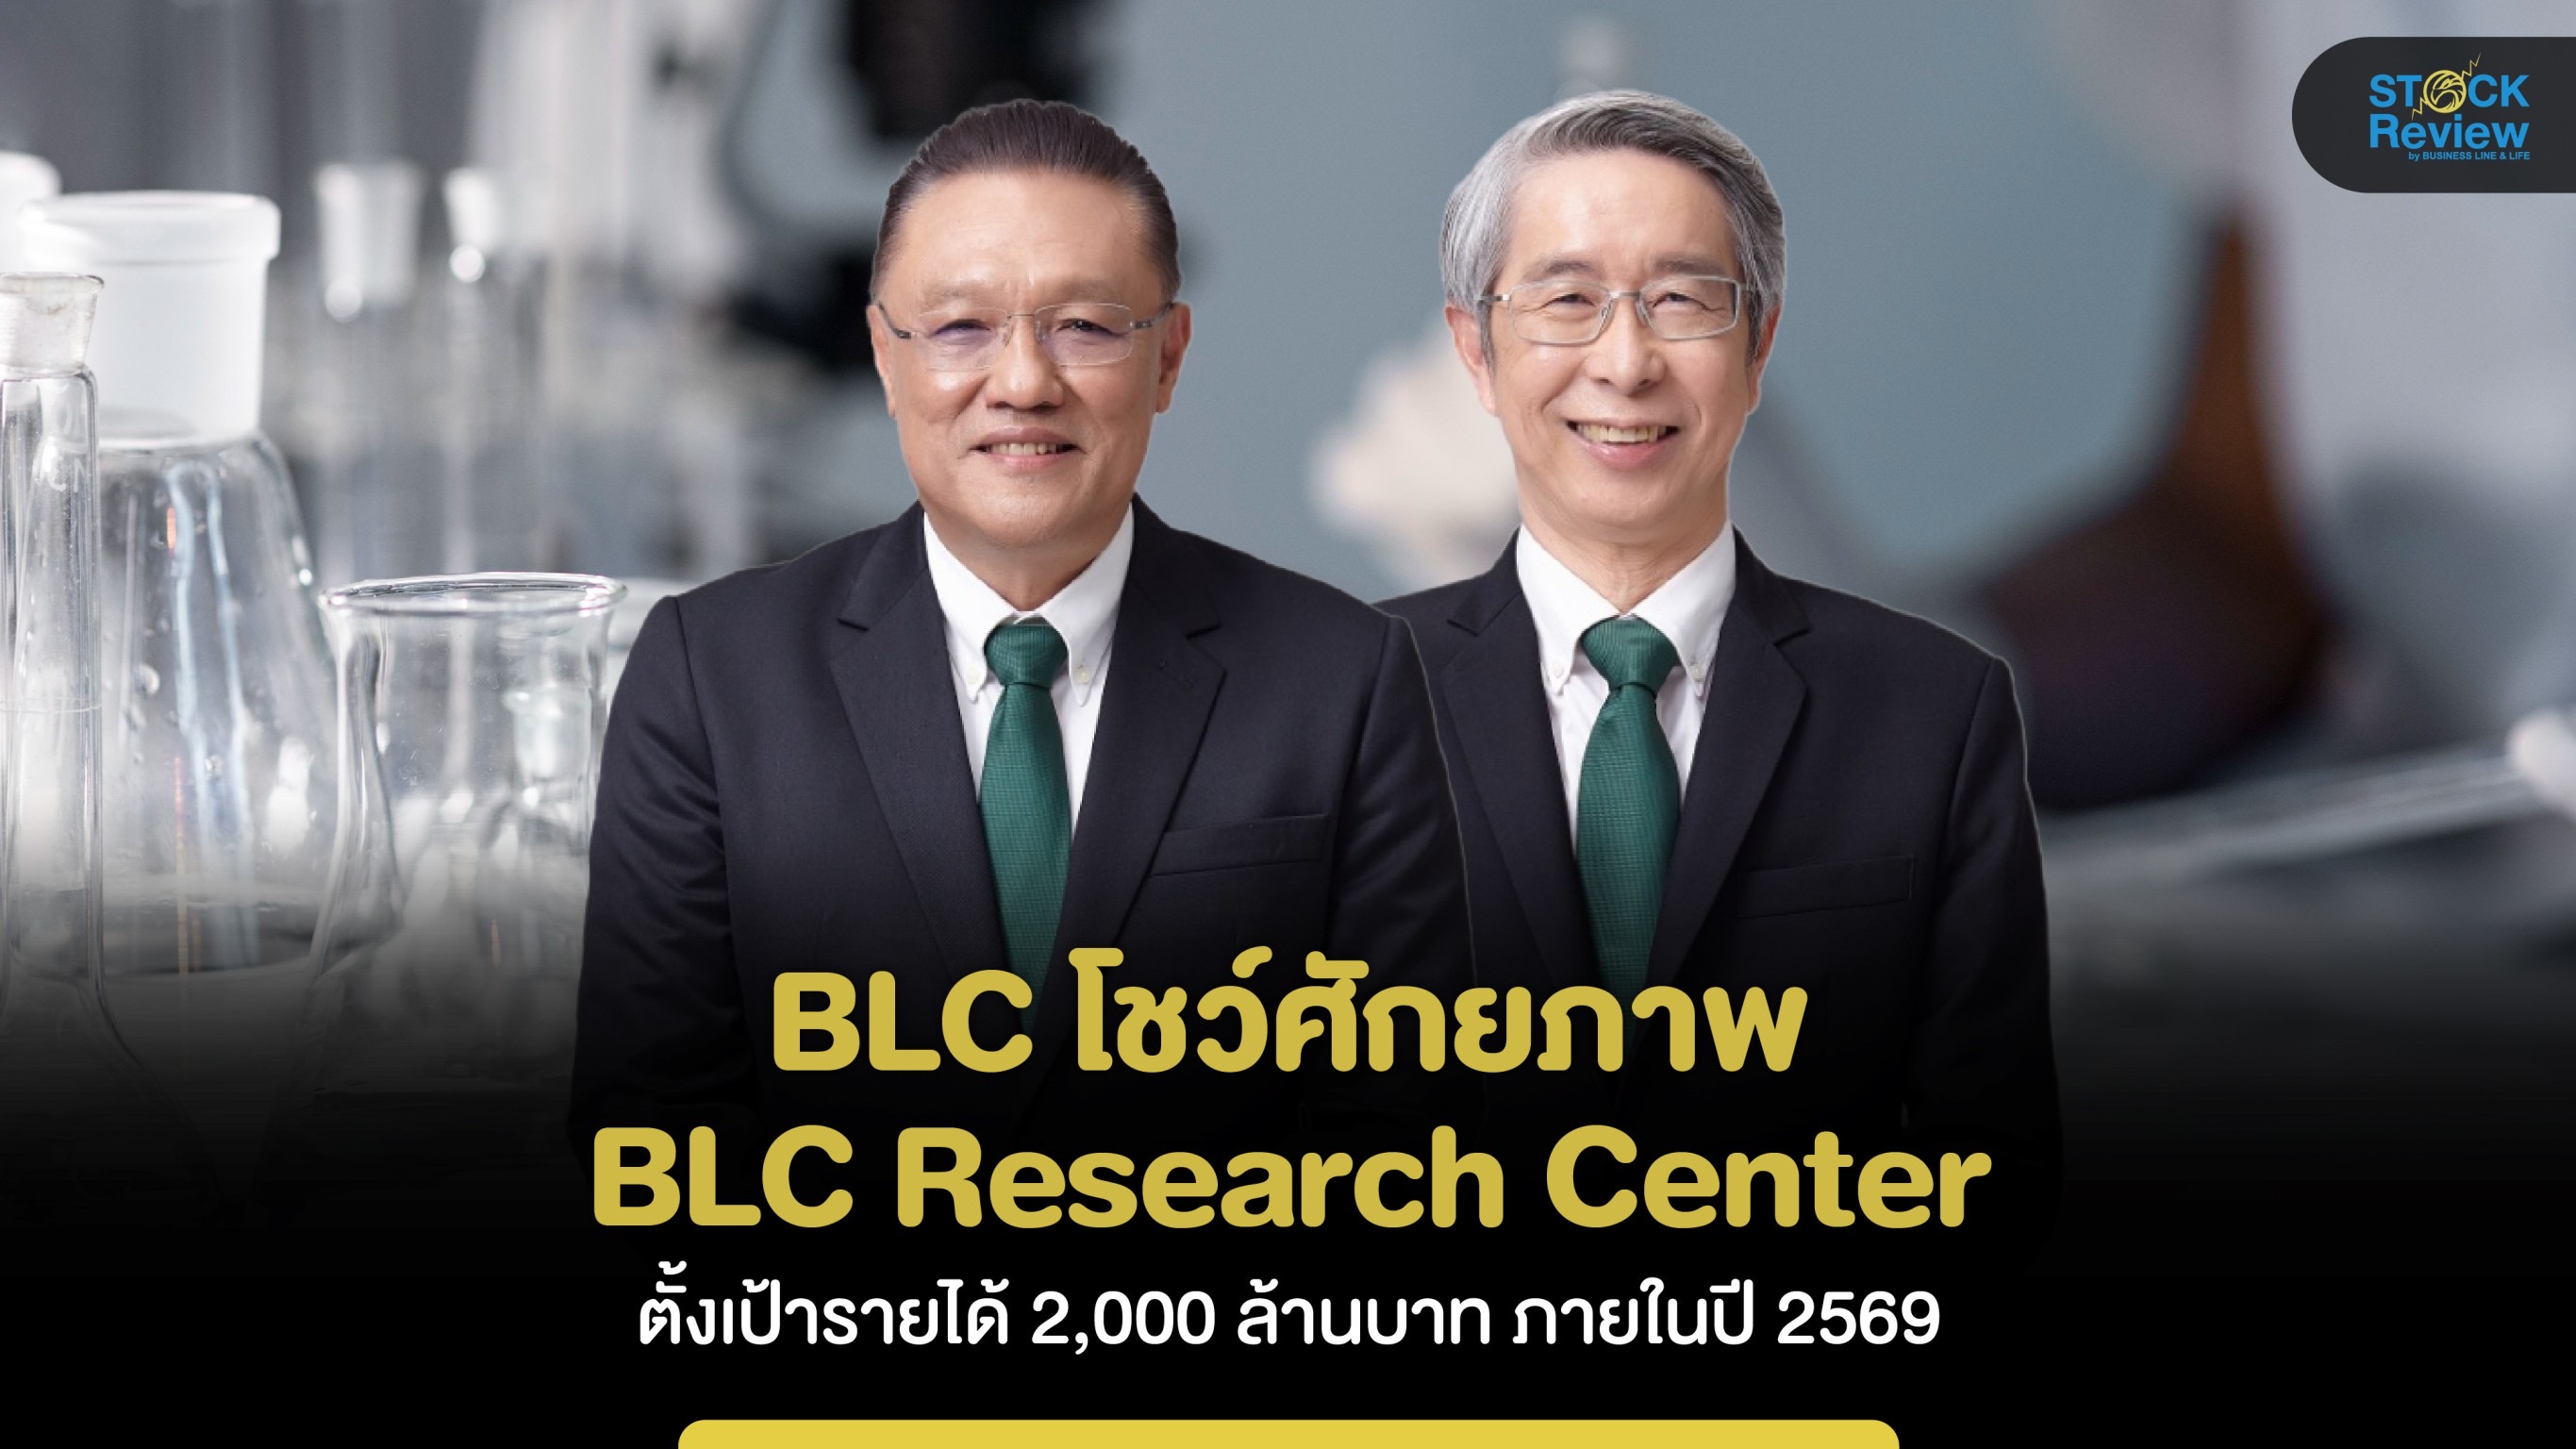 BLC โชว์ศักยภาพ BLC Research Center ตั้งเป้ารายได้ 2,000 ล้านใน 3 ปี